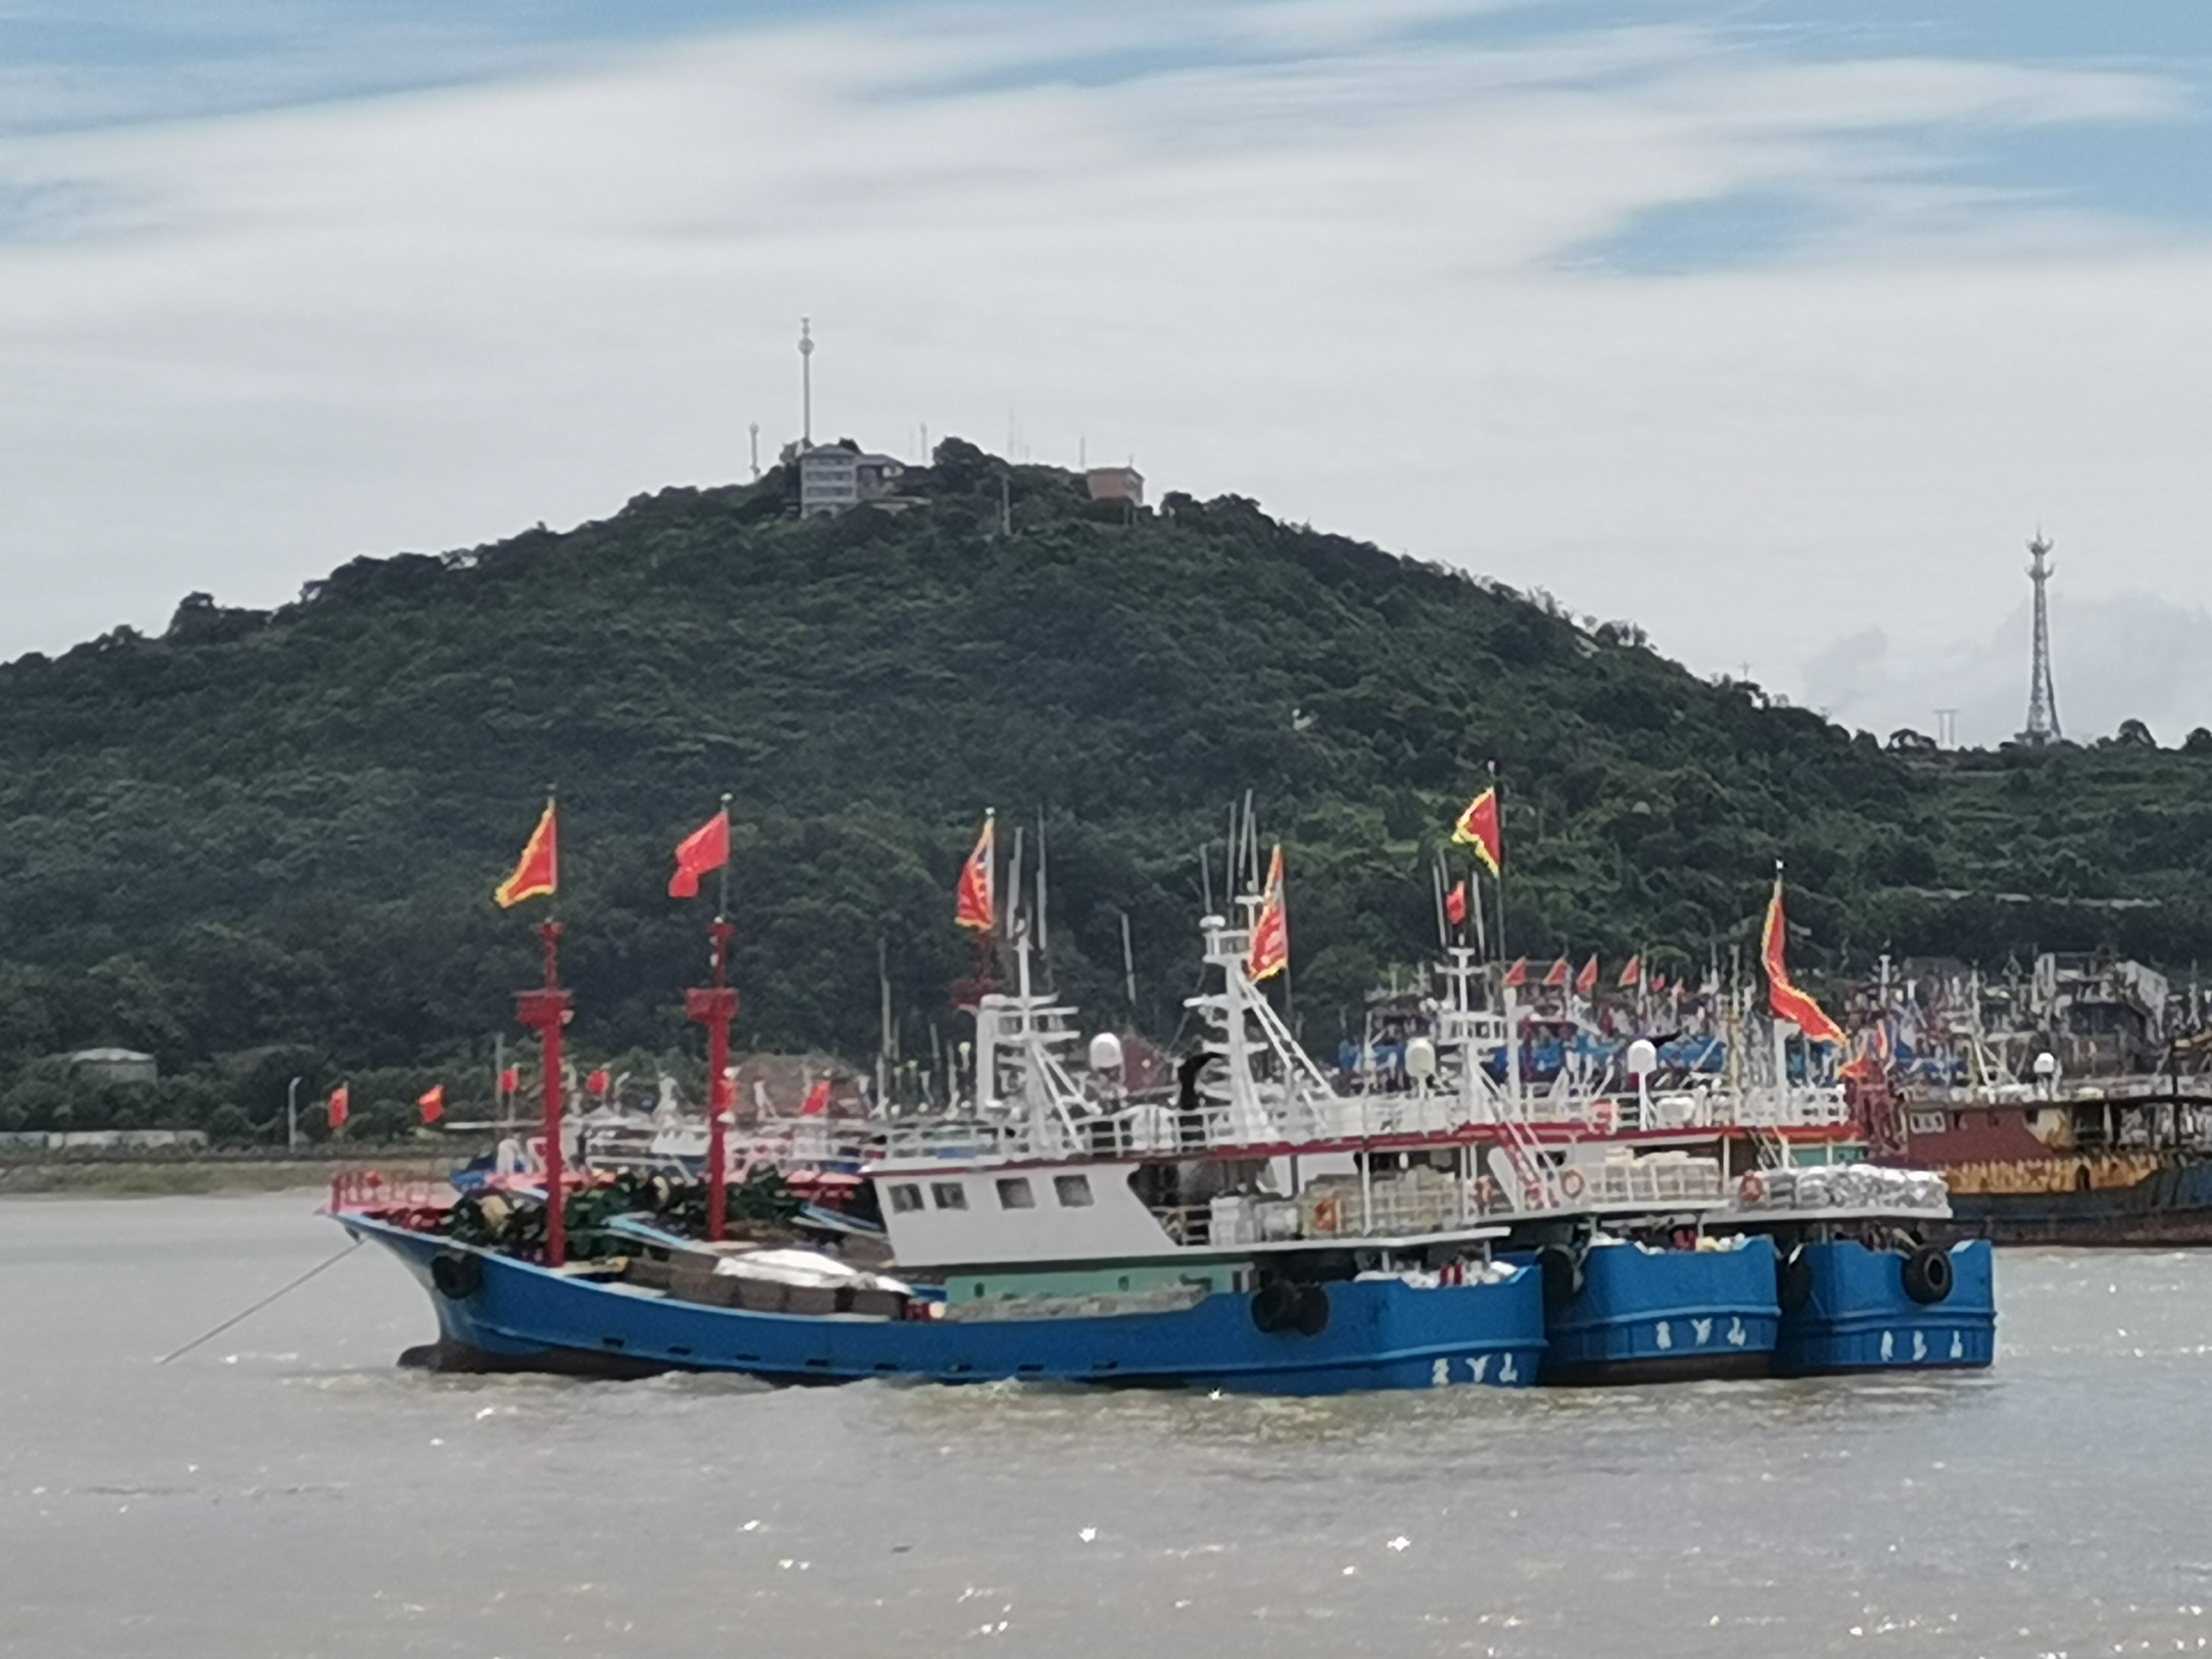 图文 视频直播 今日中午12时,浙江象山1173艘渔船解禁开捕-象山新